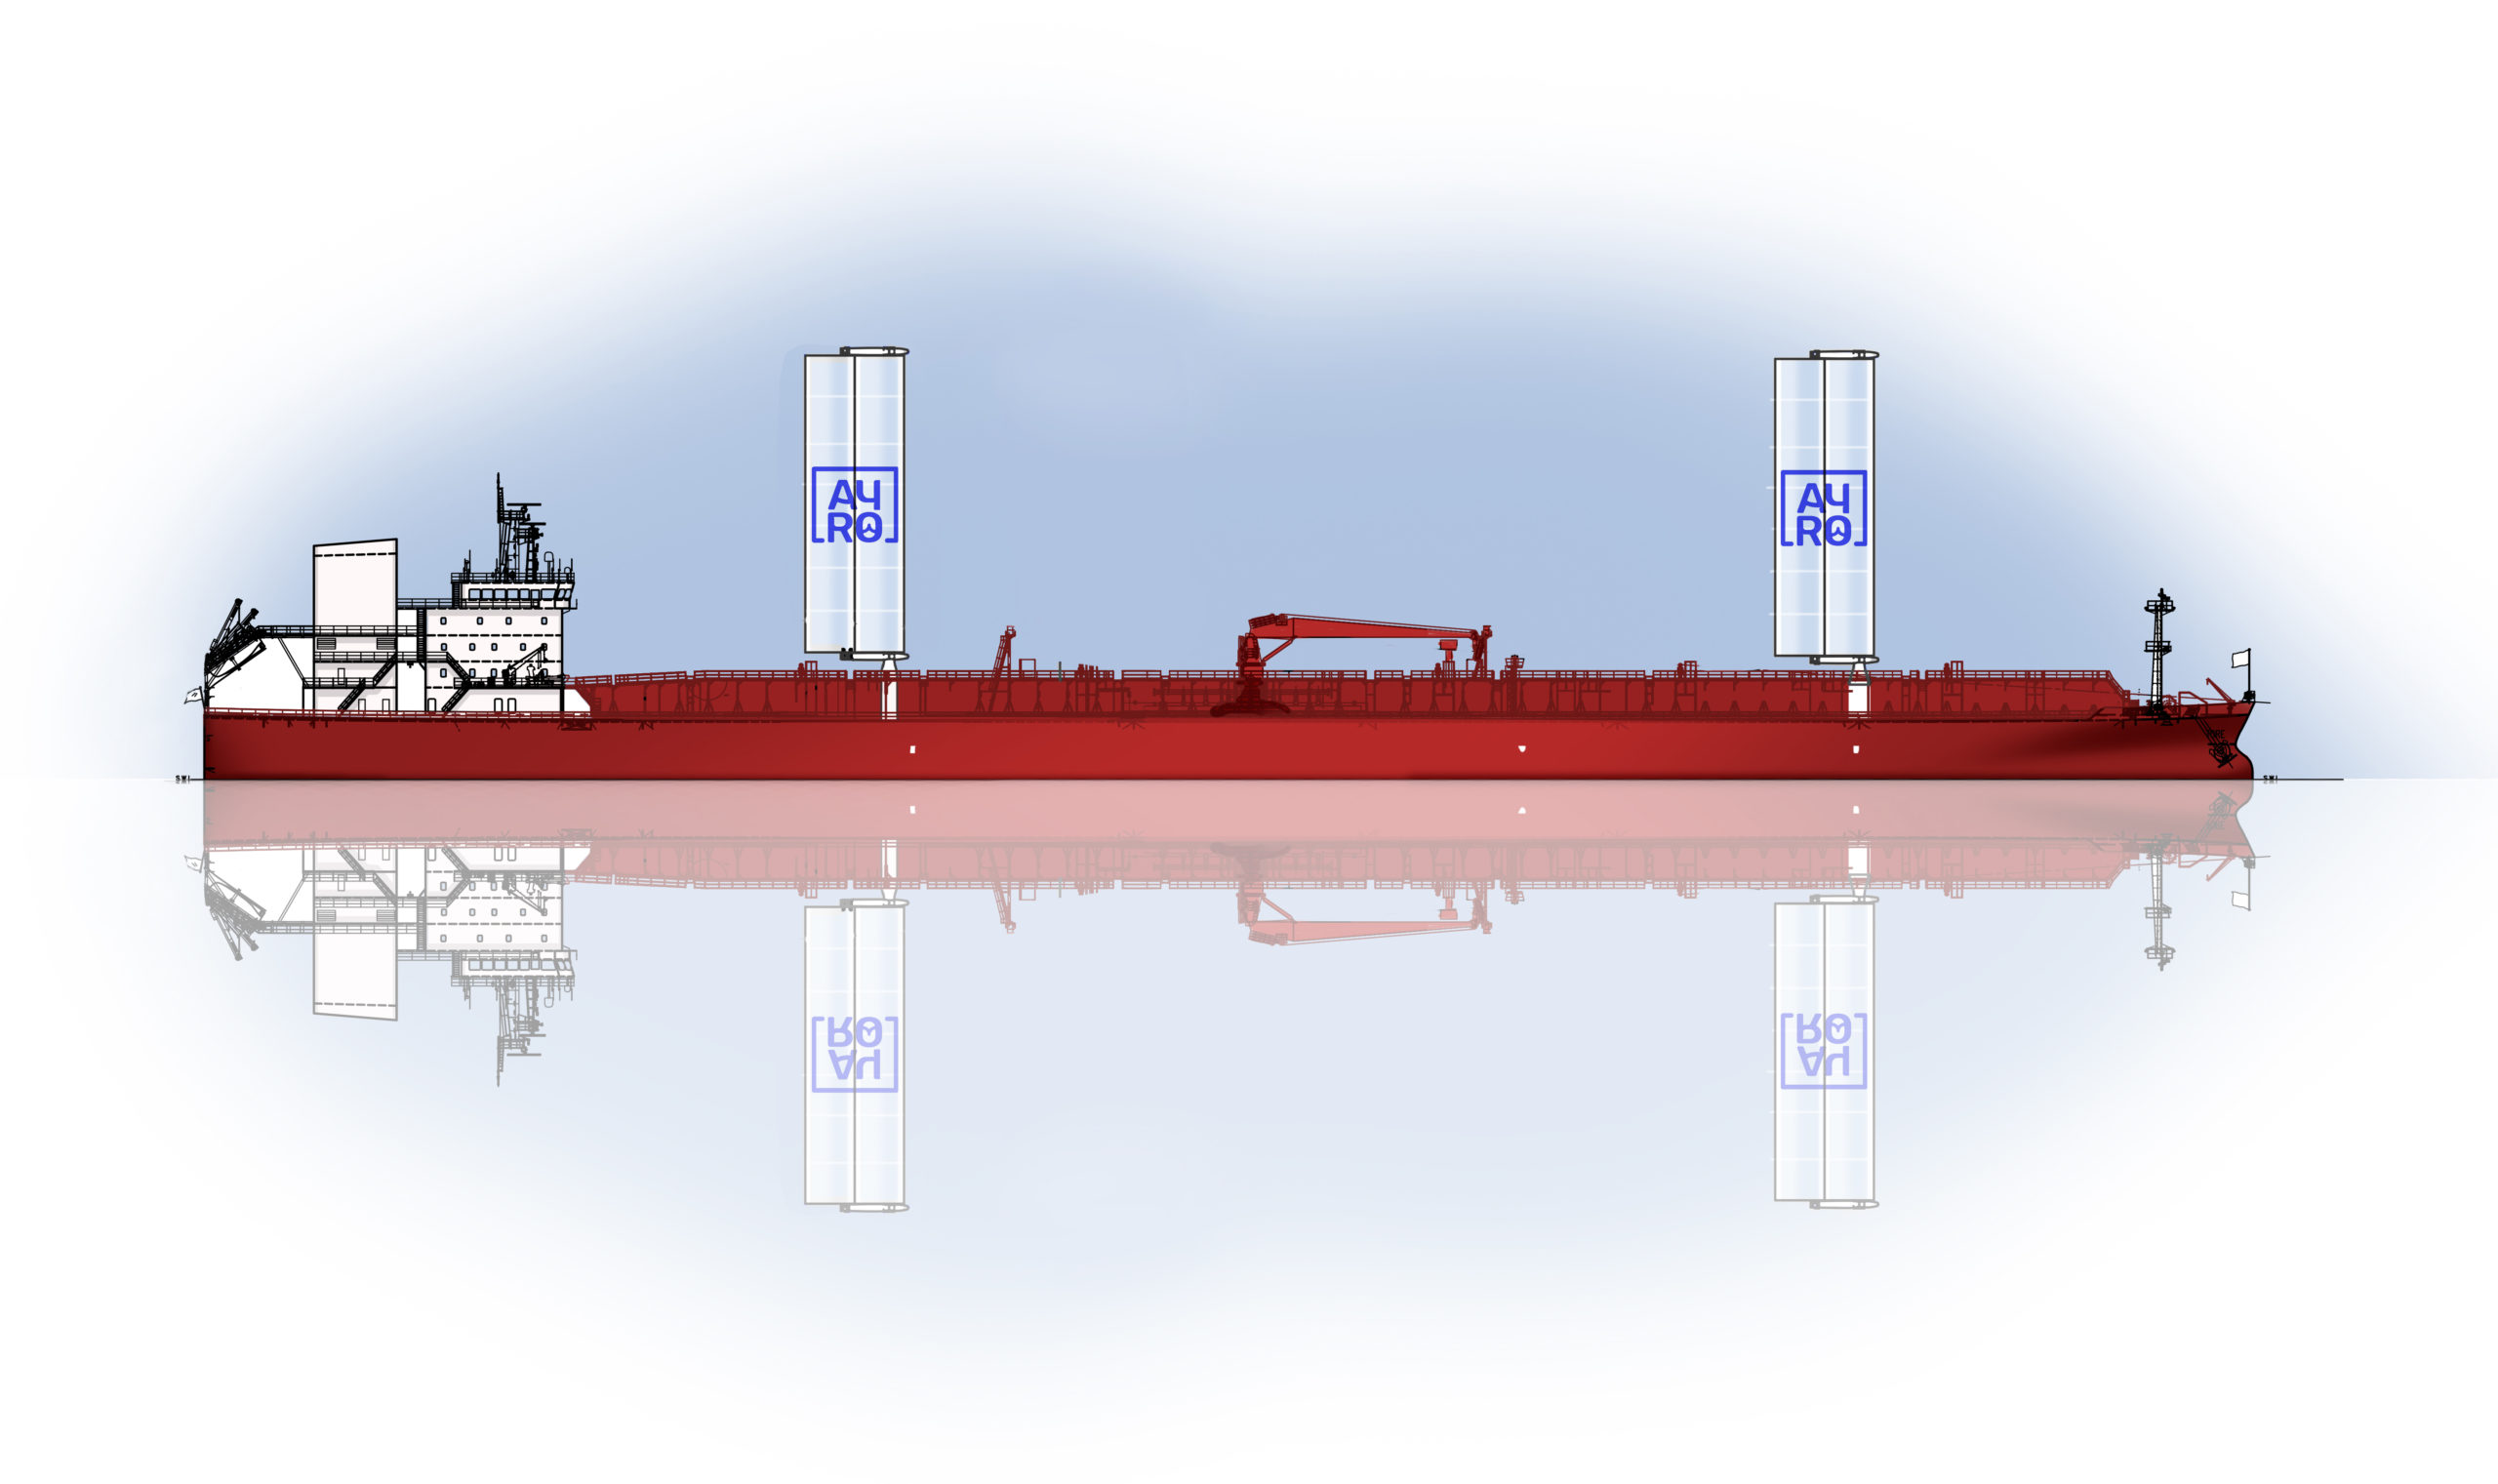 Wing sails on Tankers: Oceanwings